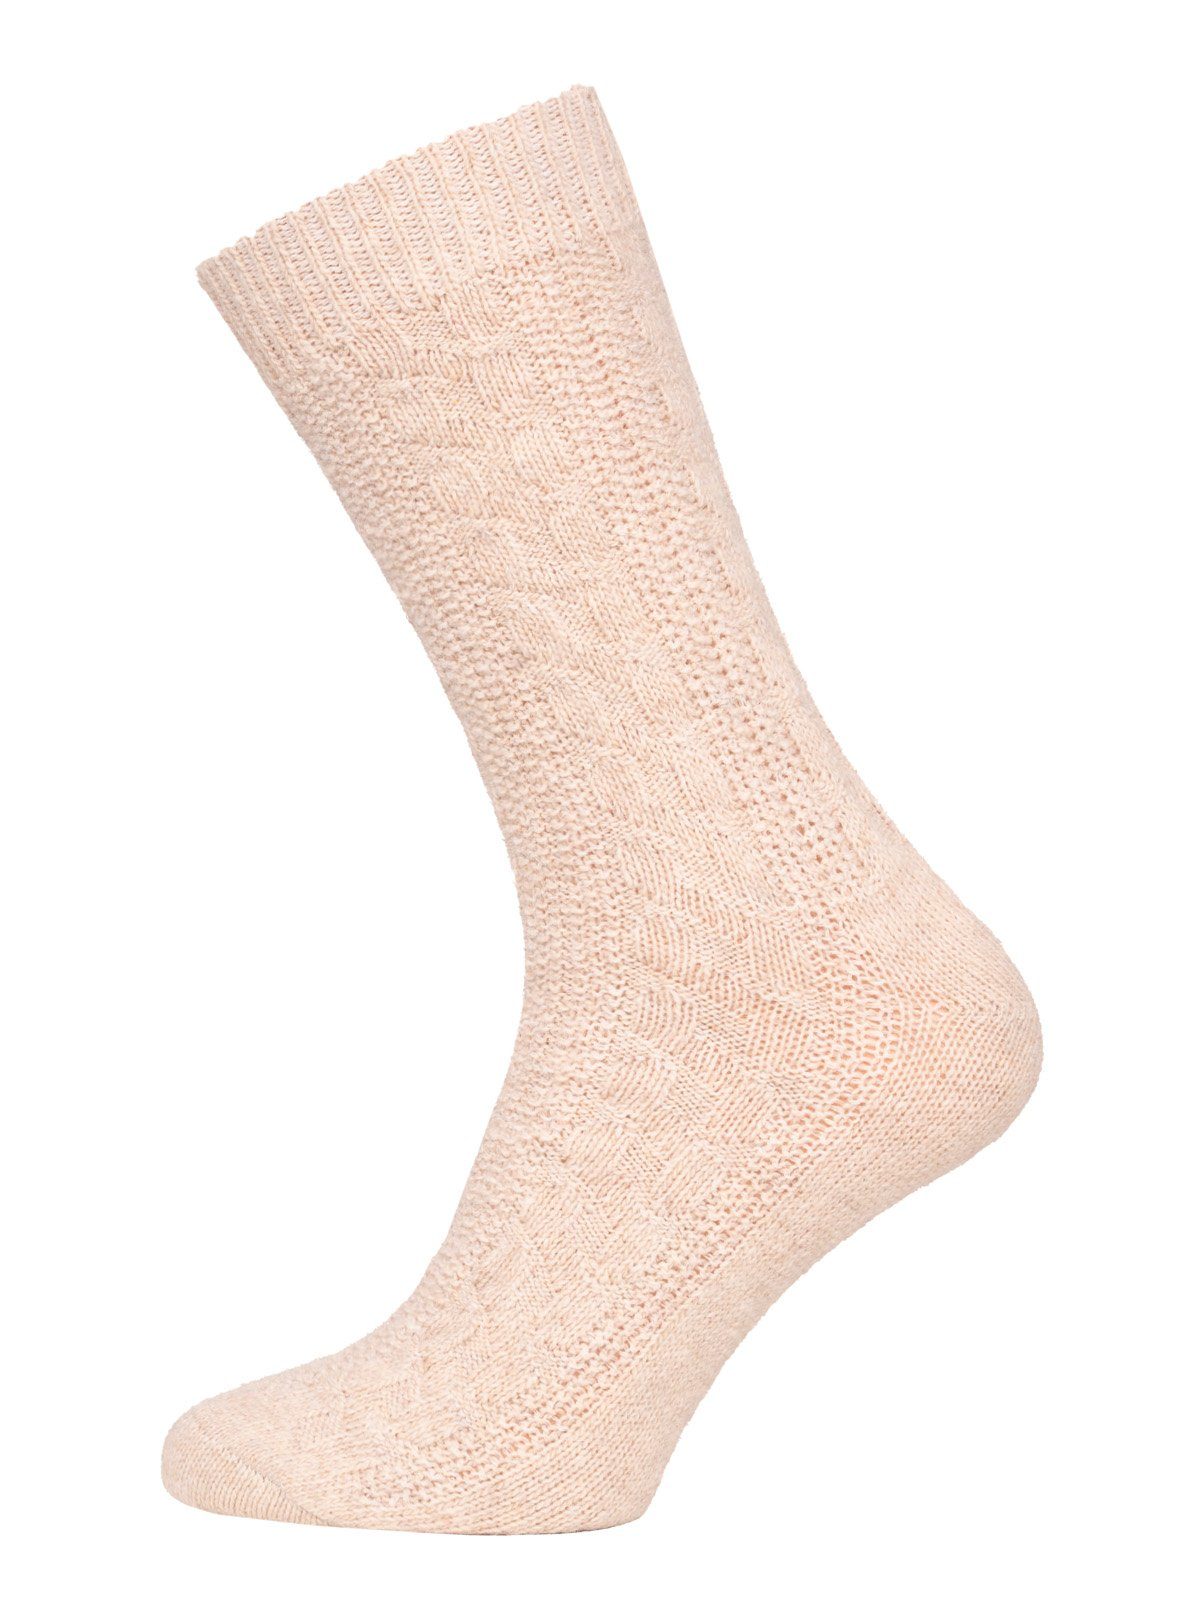 HomeOfSocks strapazierfähige Lammwolle Zopfmuster Extra Wollsocken 1 Beige Paar) Feine Socks Lambswool (Paar, und Wollsocken Warm Socken 70%